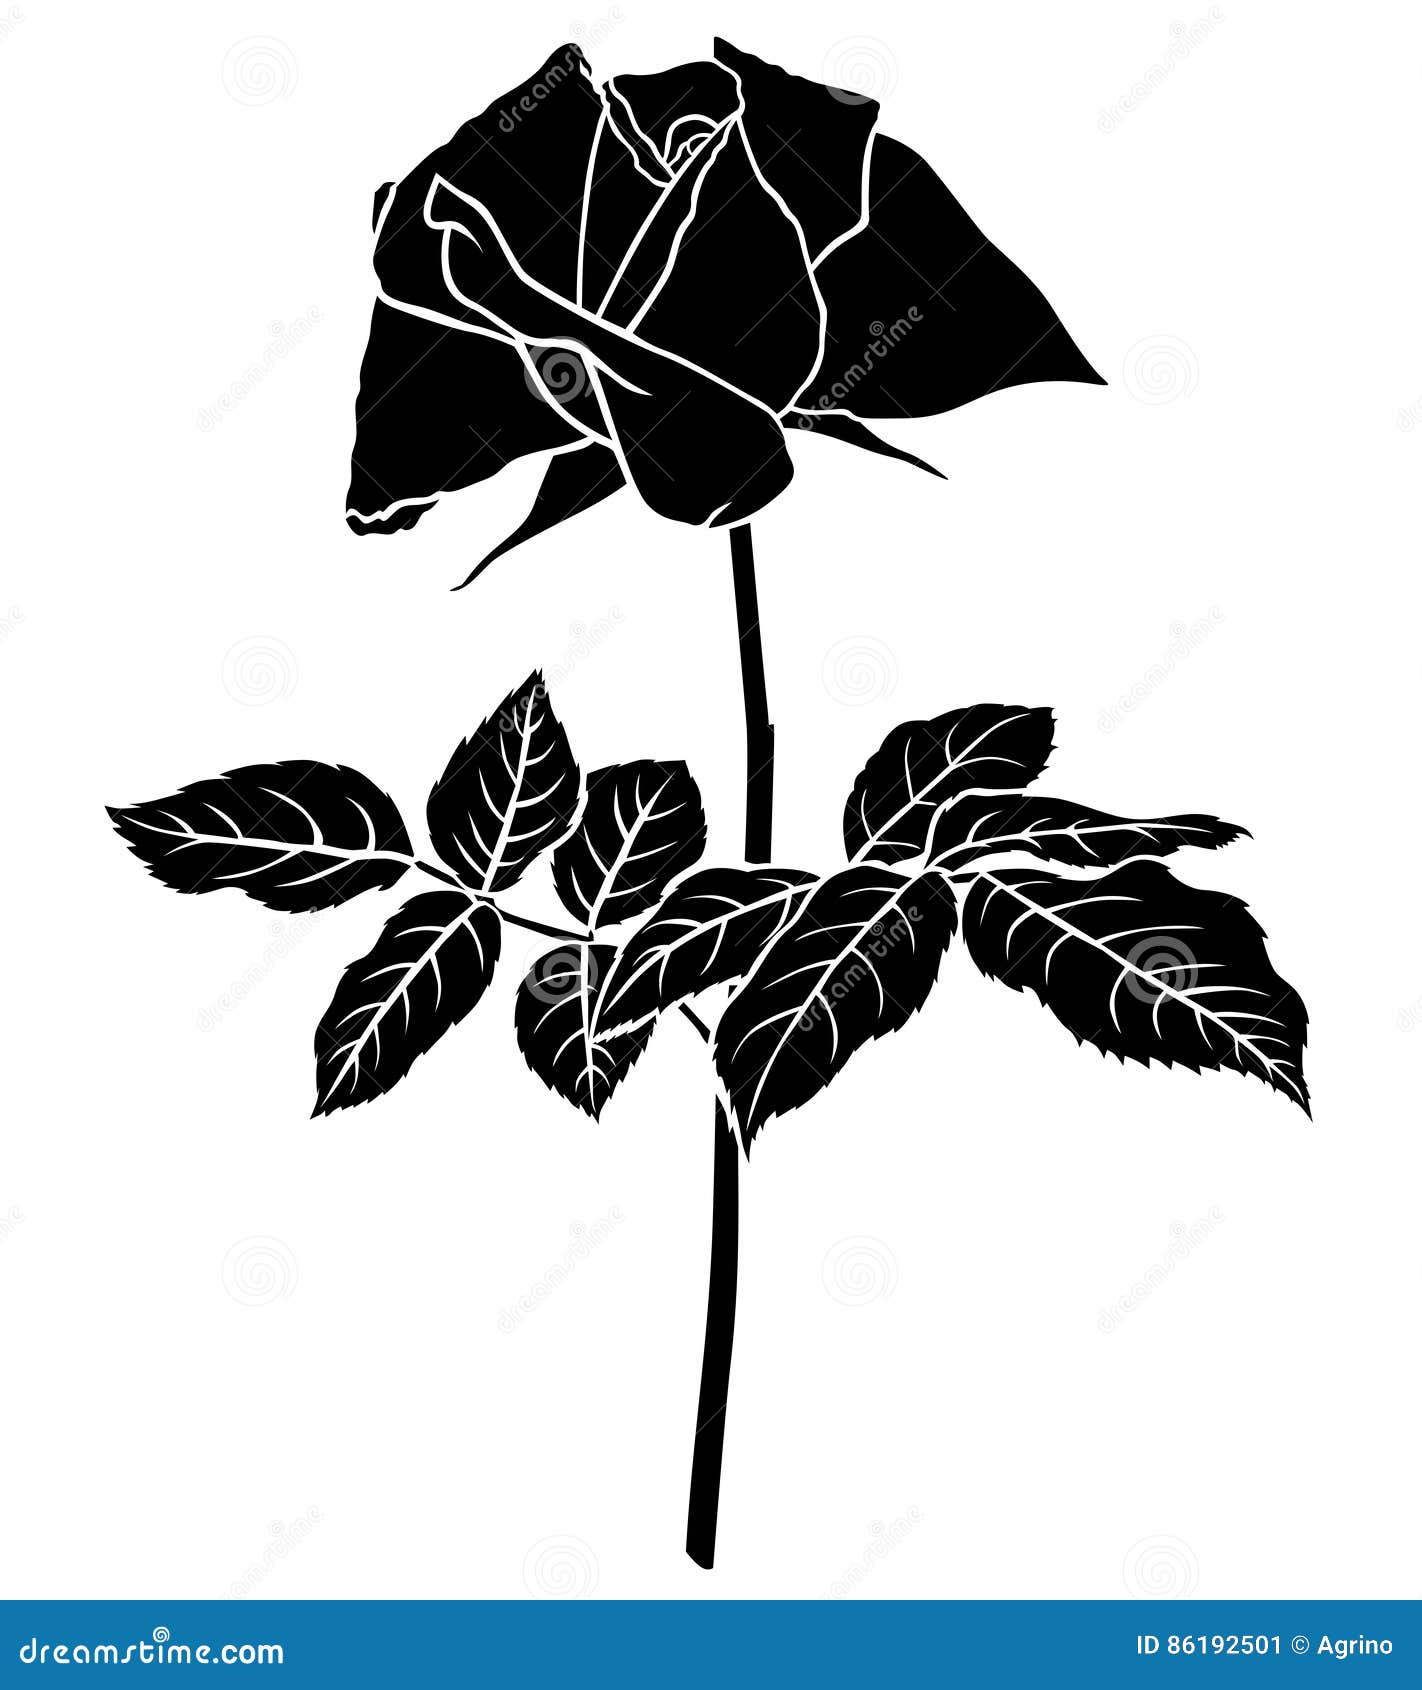 Roses flower silhouette stock vector. Illustration of plant - 86192501